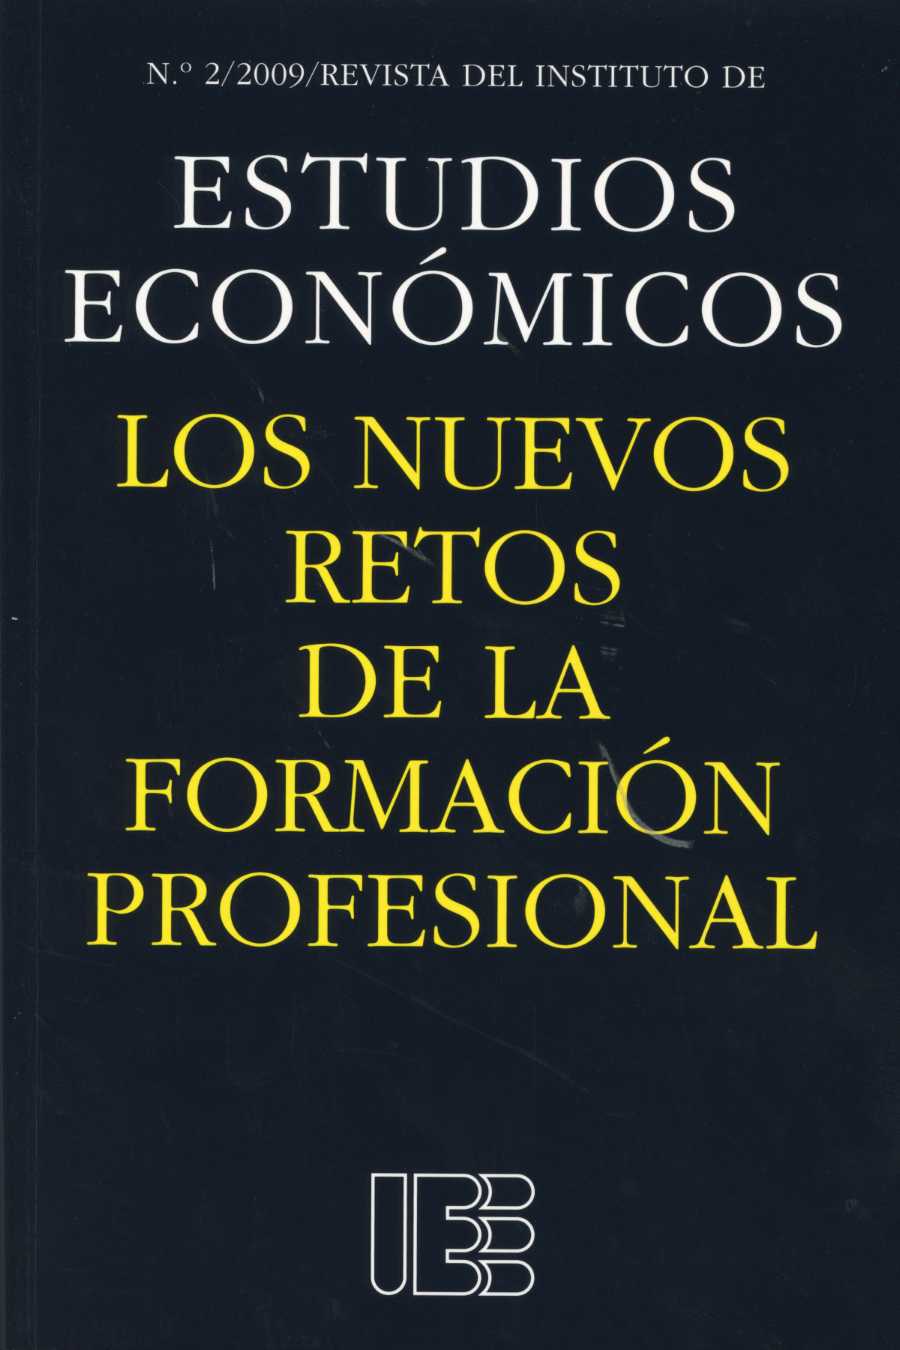 Nuevos Retos de la Formación Profesional, Los. Nº 2/2009 Revista del Instituto de Estudios Economicos-0